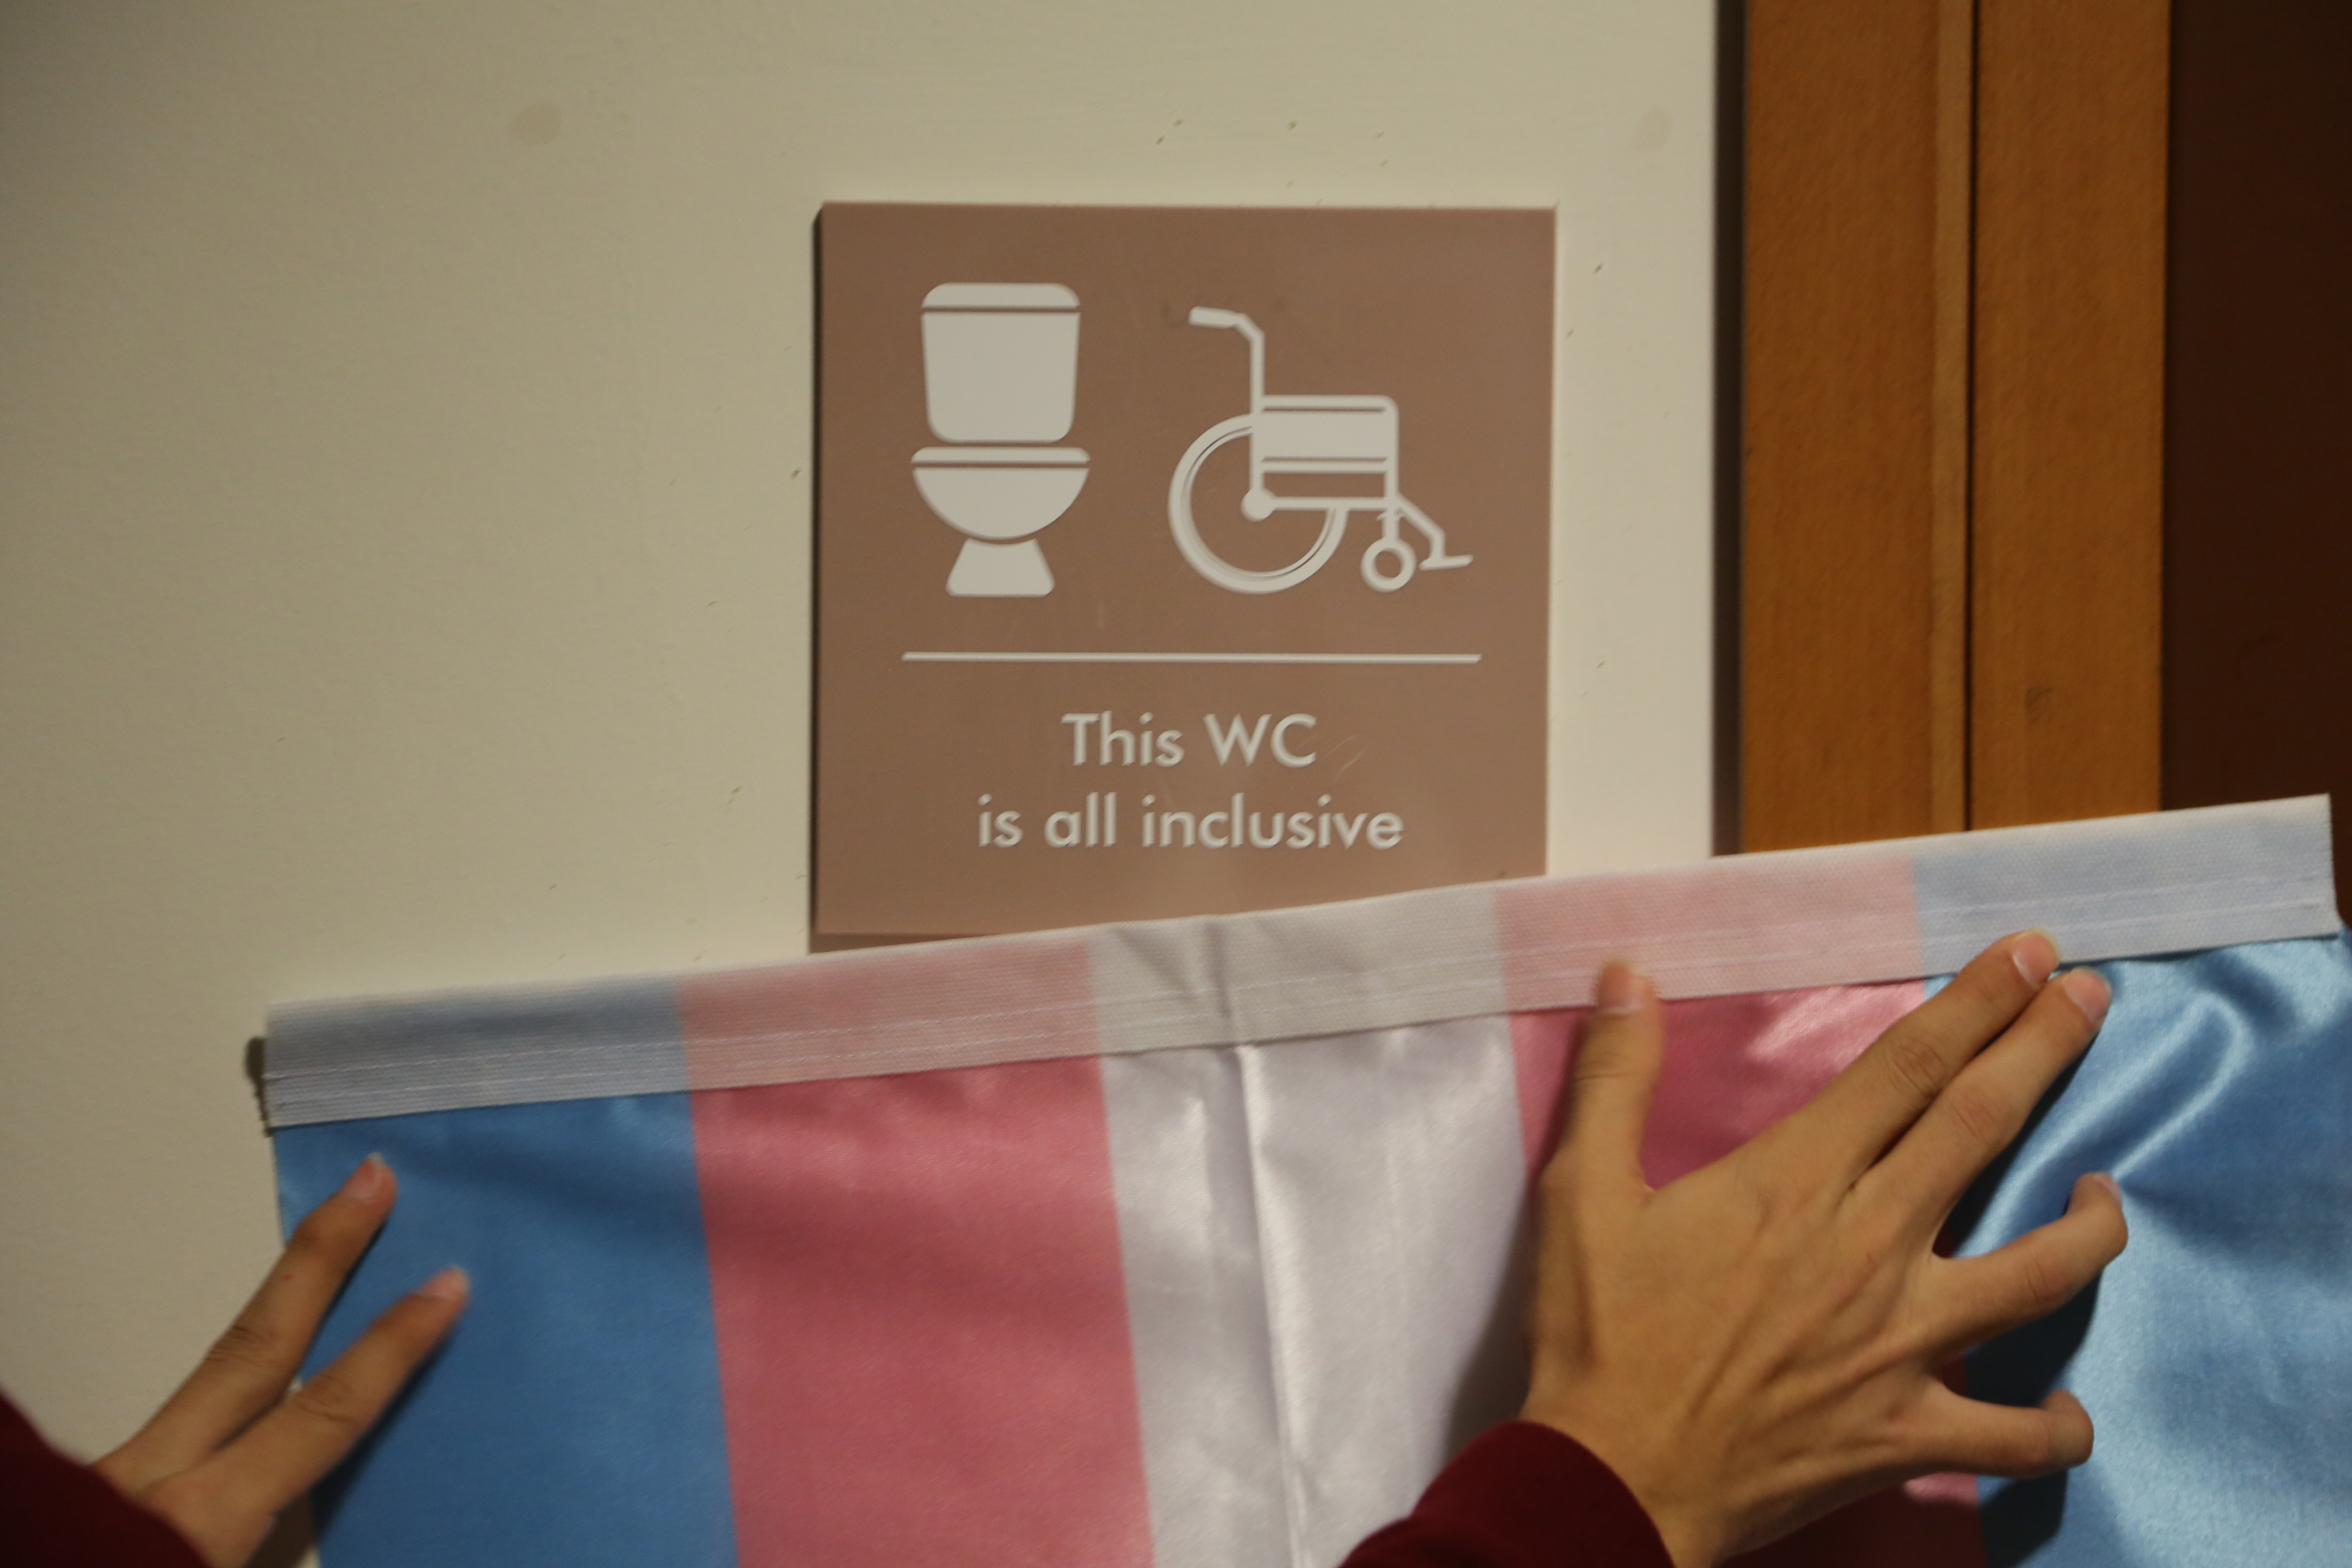 Koç Üniversitesi’nde dokuz cinsiyetsiz tuvalet açıldı | Kaos GL - LGBTİ+ Haber Portalı Haber